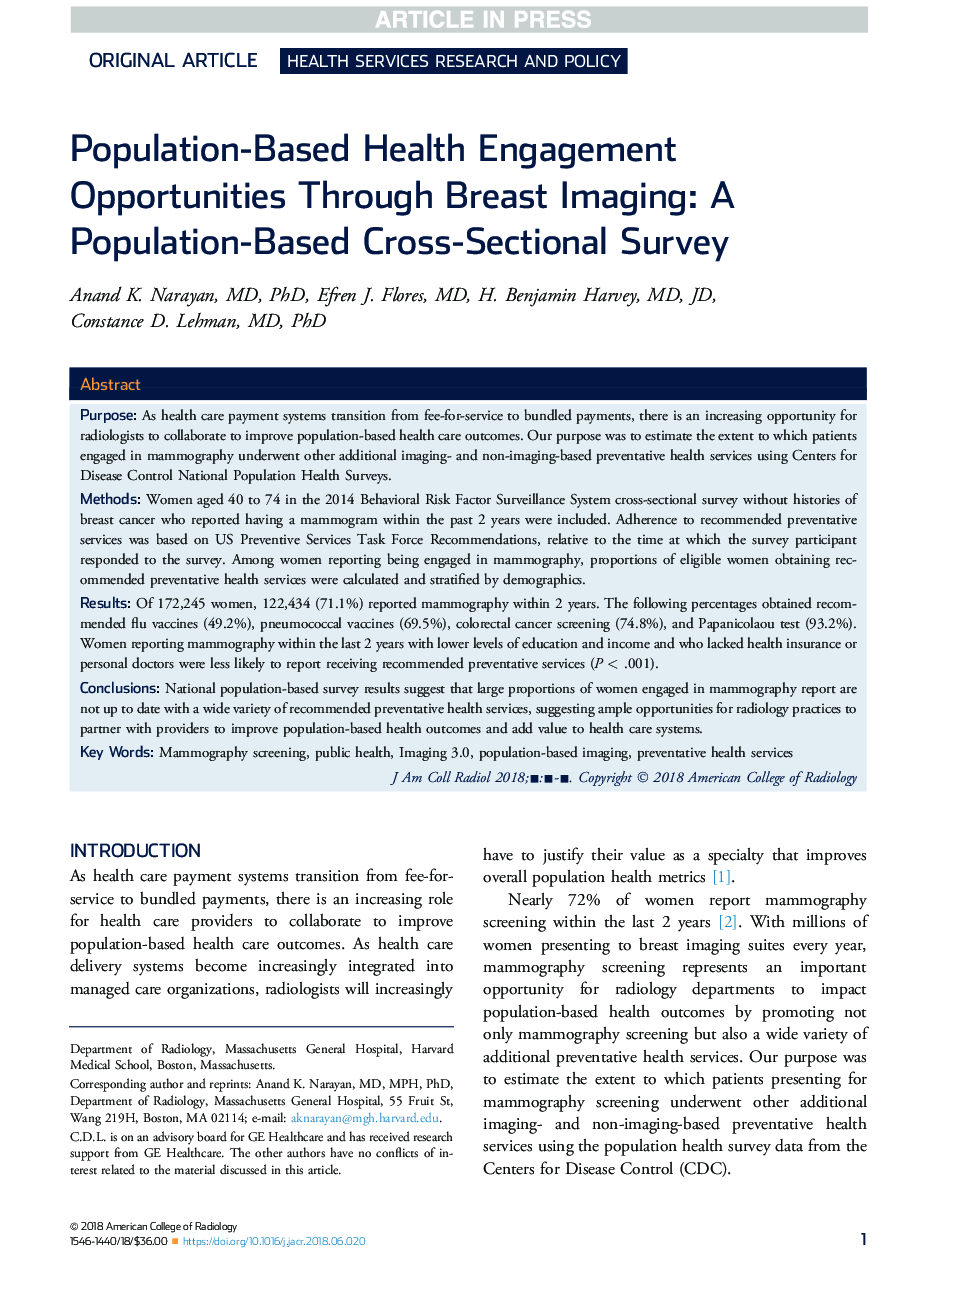 فرصت های جذب سلامت مبتنی بر جمعیت از طریق تصویربرداری پستان: یک بررسی کلی بر اساس جمعیت